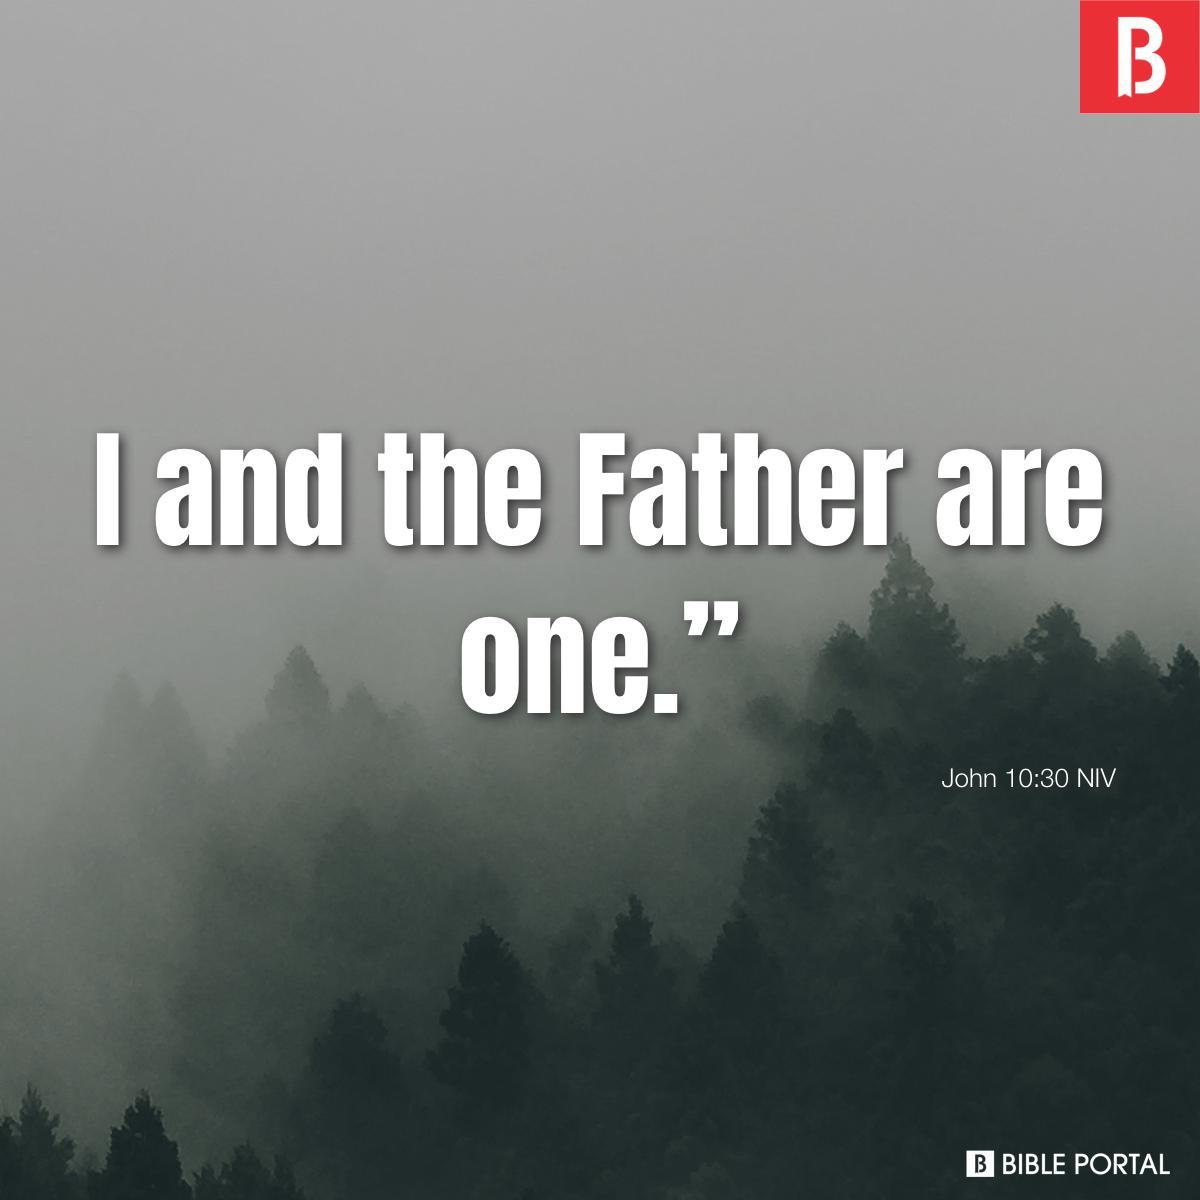 John 10:30 NIV